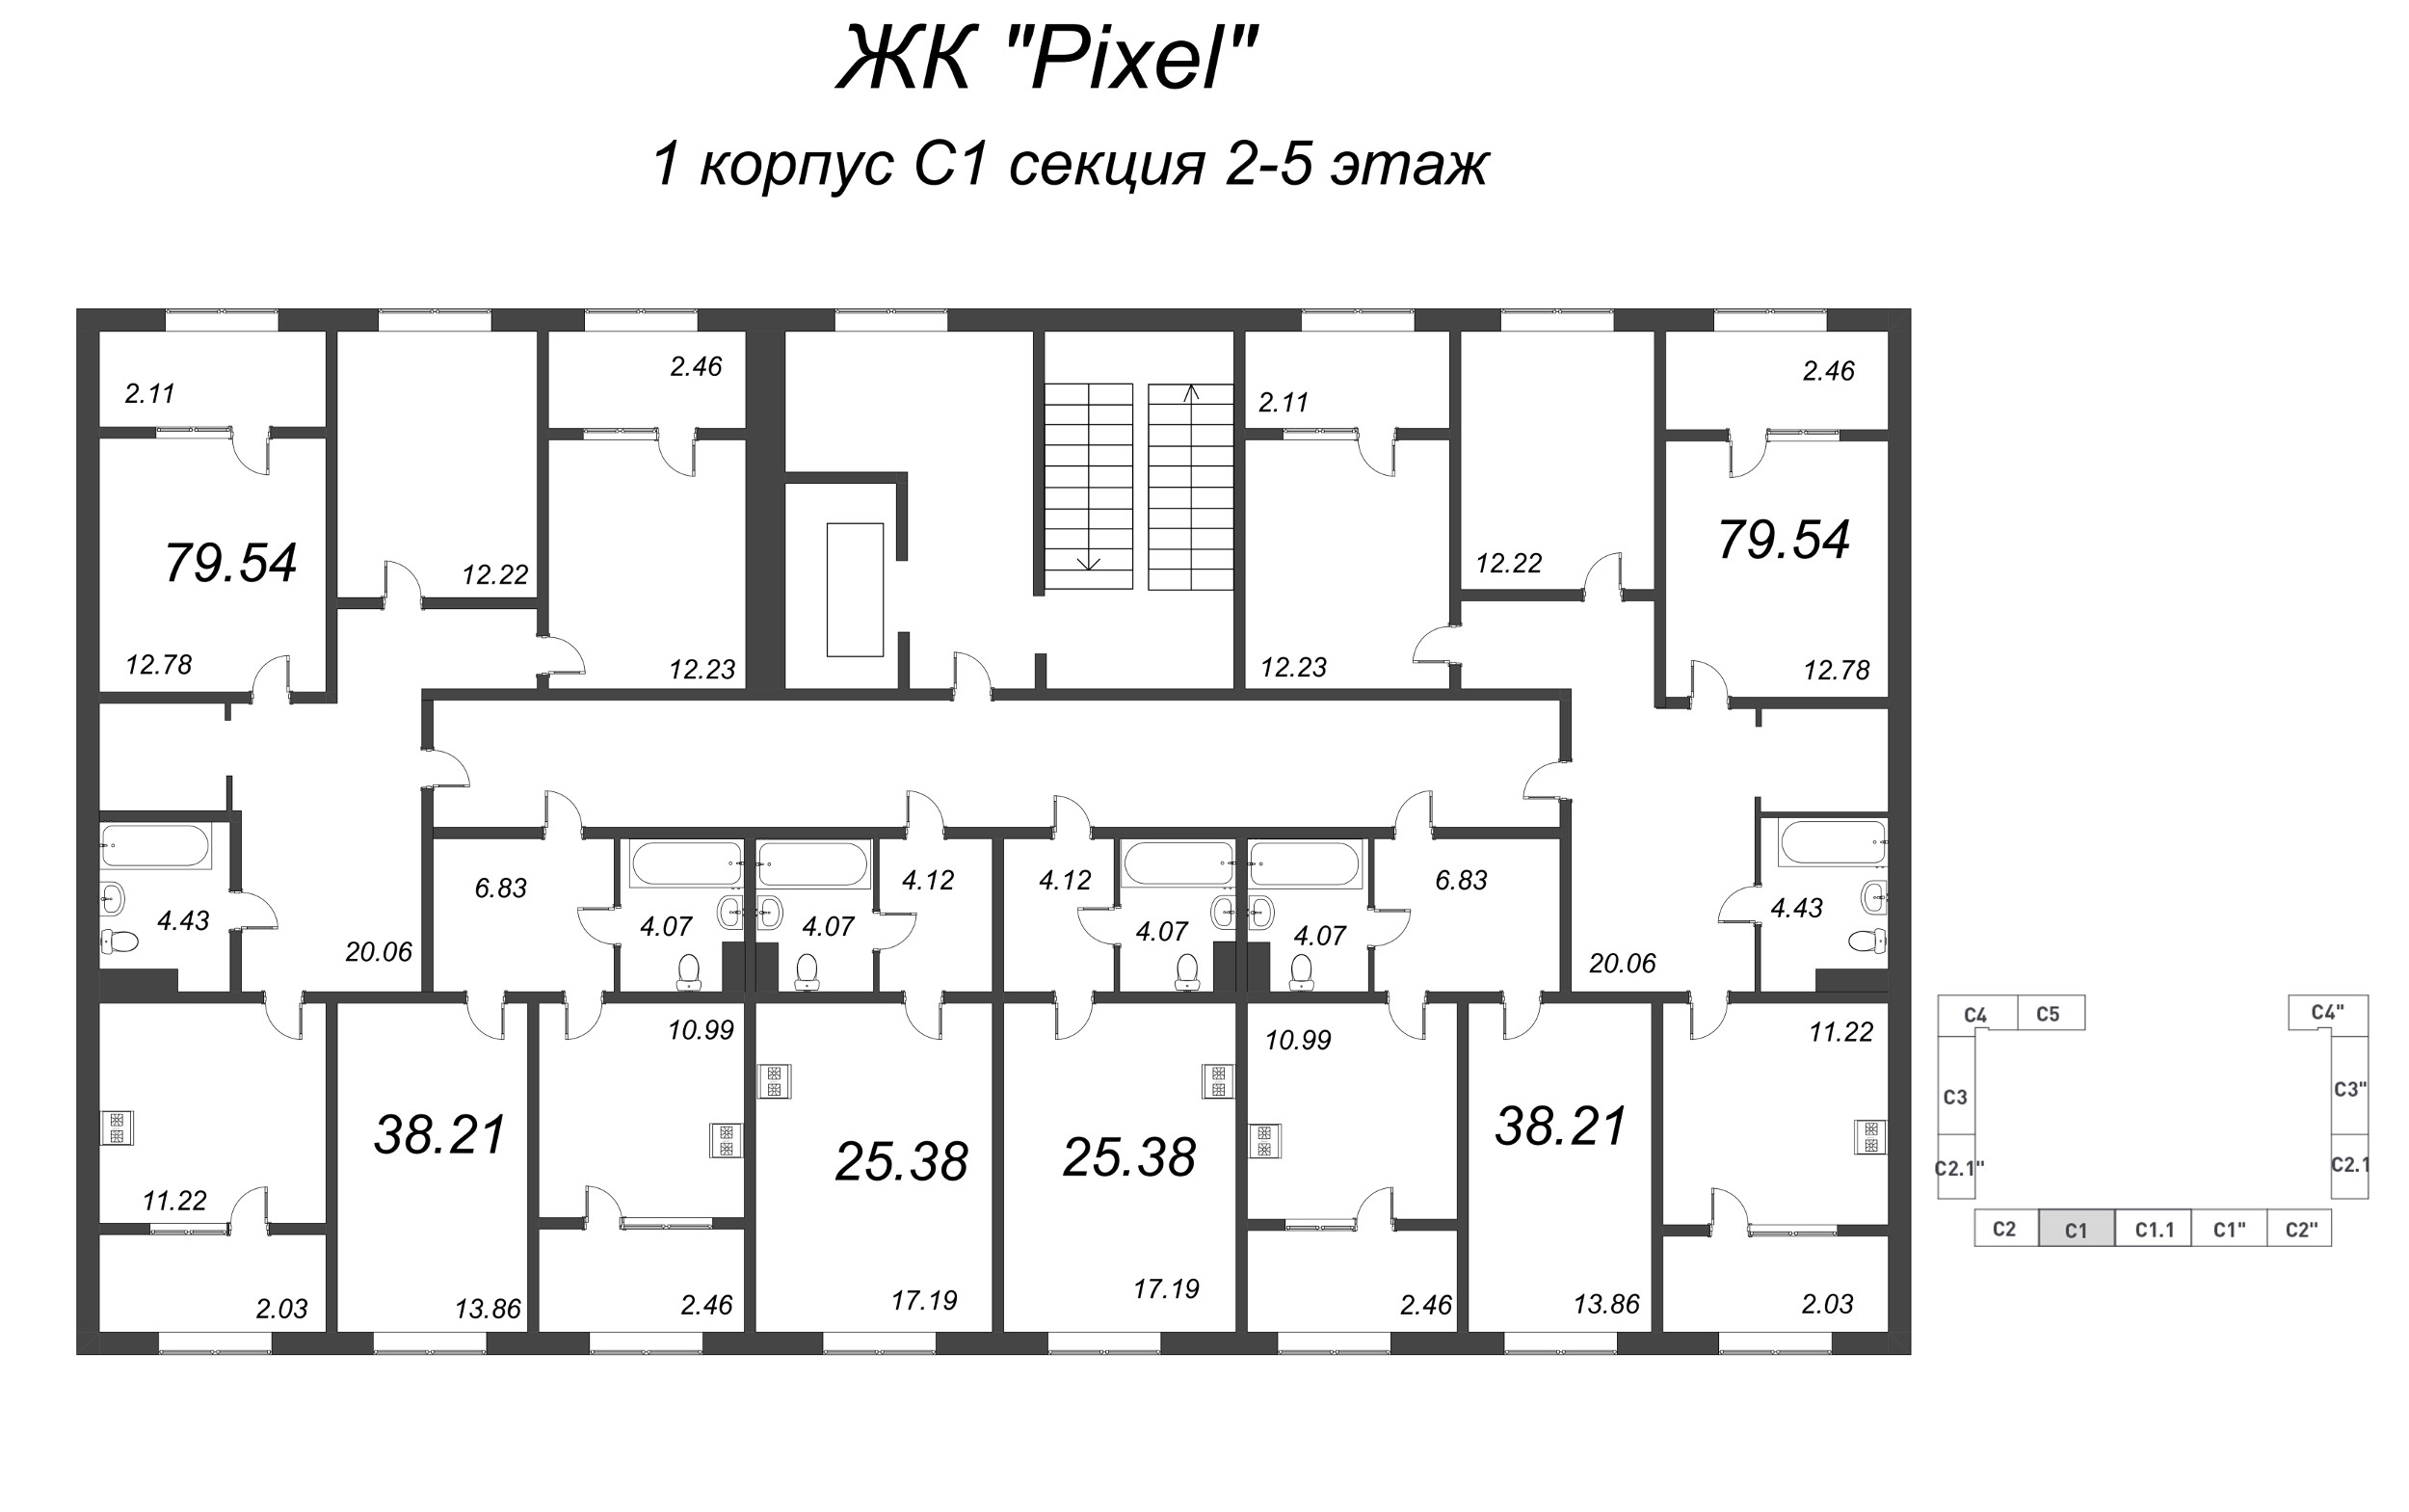 3-комнатная квартира, 79.54 м² в ЖК "Pixel" - планировка этажа